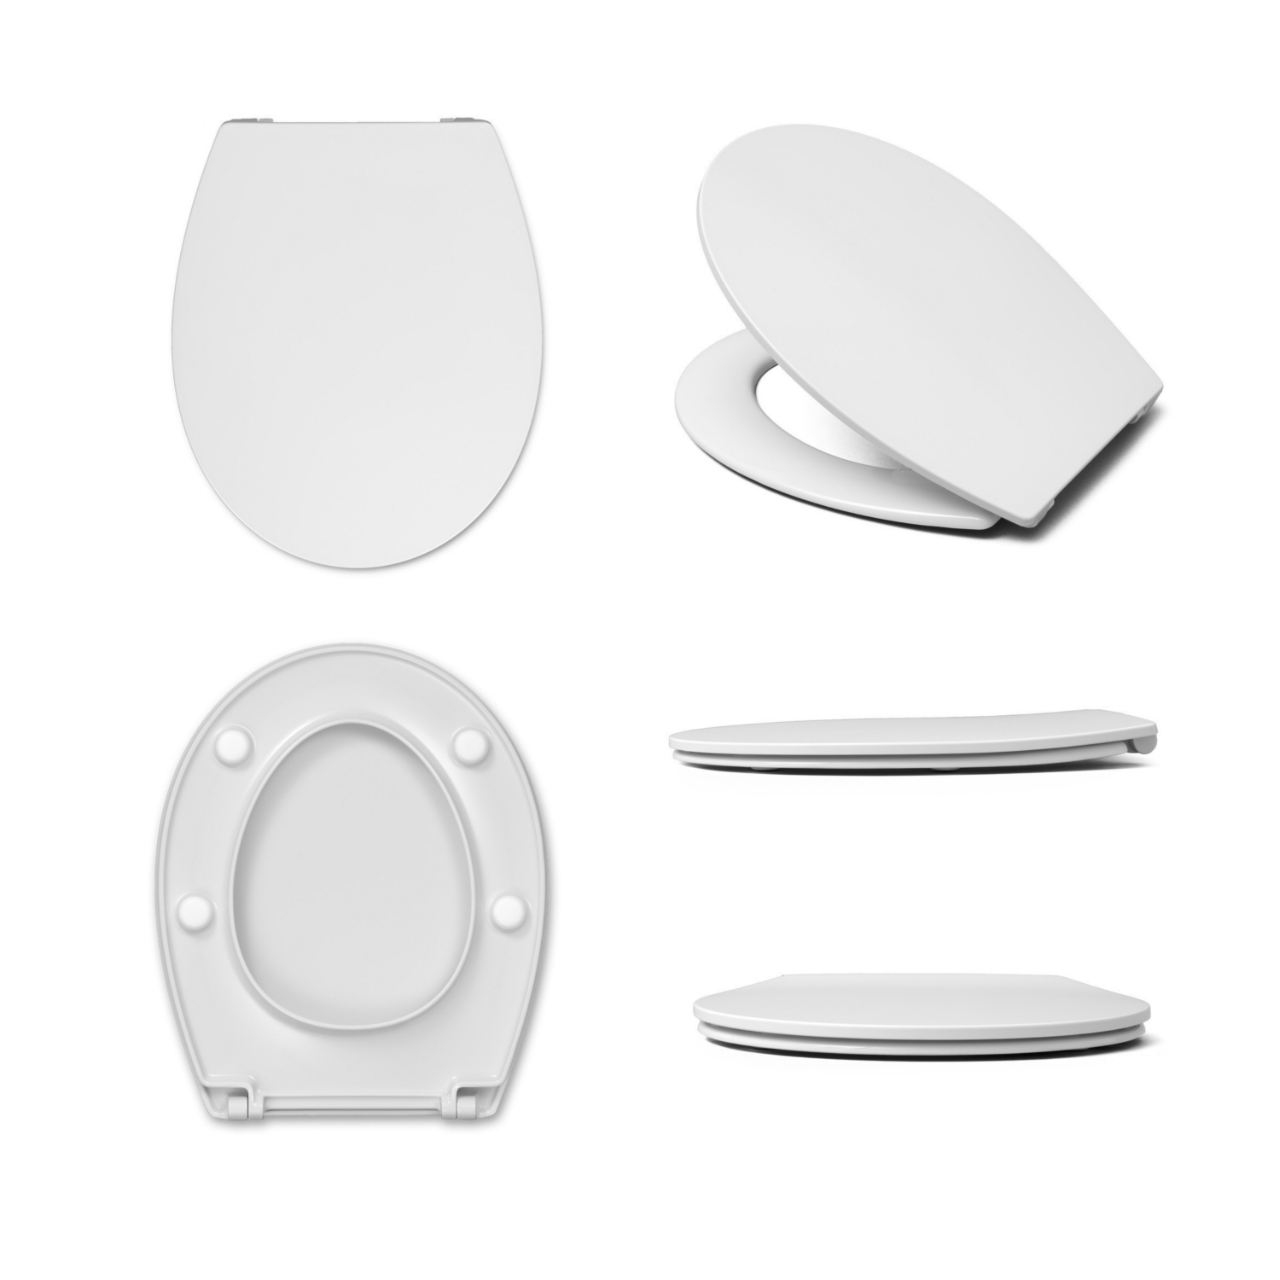 Vorwand-/Einbauelement für Toilette mit Unterputz-Spülkasten Delta (UP100) „DuofixBasic“, Wand-Tiefspül-WC, WC-Sitz „Revo“, Soft Closing, Betätigungsplatte StarBlueDisc „Mocha 35“